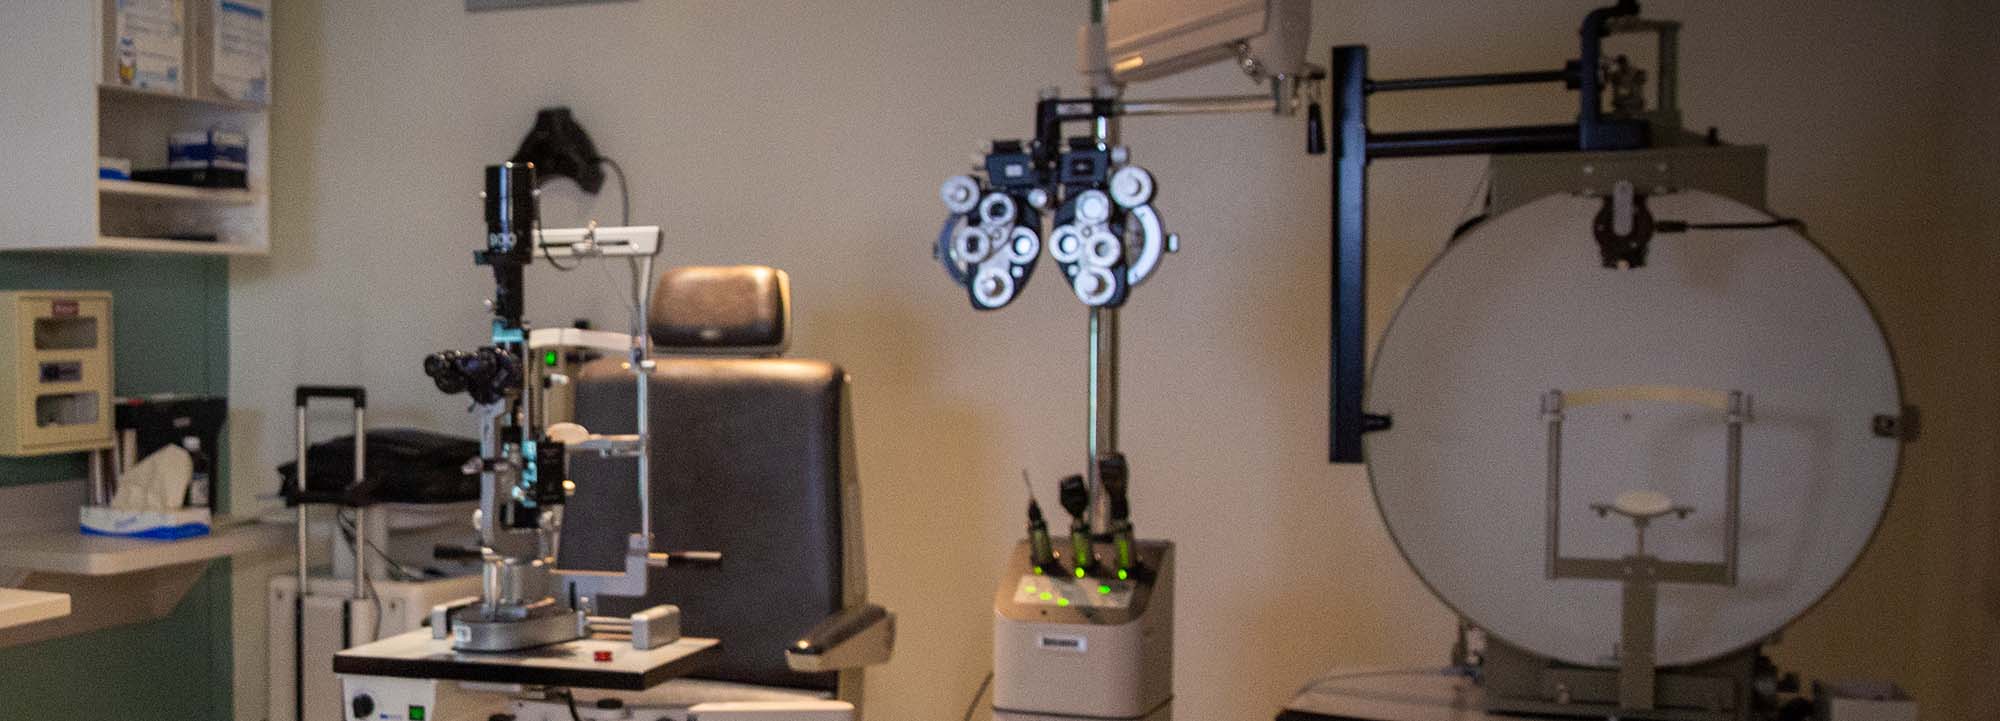 Attrezzatura per oftalmologia in una clinica oculistica